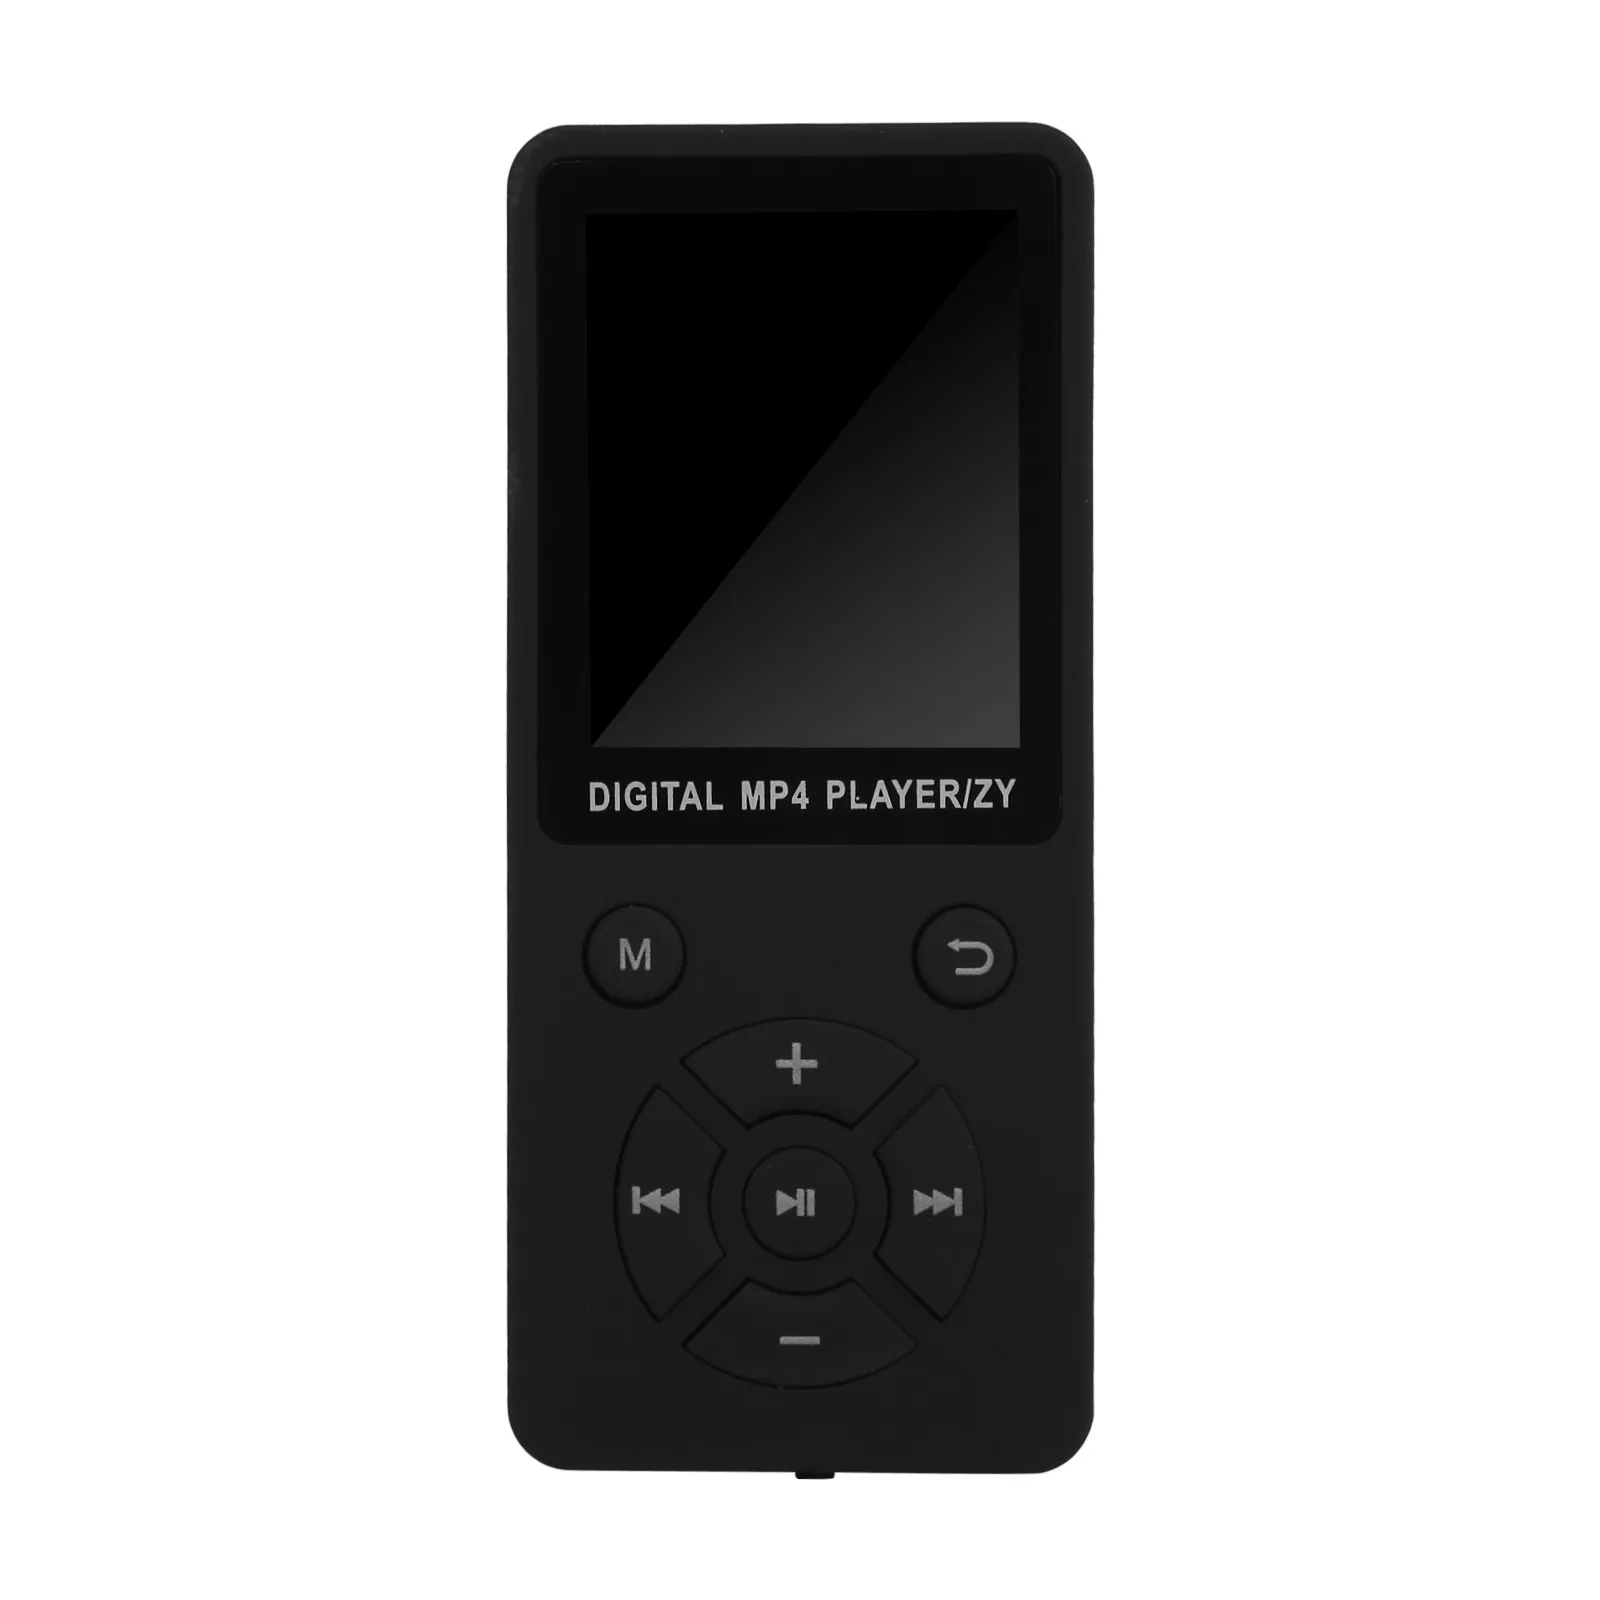 EPULA MP3 MP4 плеер портативный мини Bluetooth цветной экран Спорт Музыка Видео игры фильм Поддержка FM стерео радио просмотр фотографий